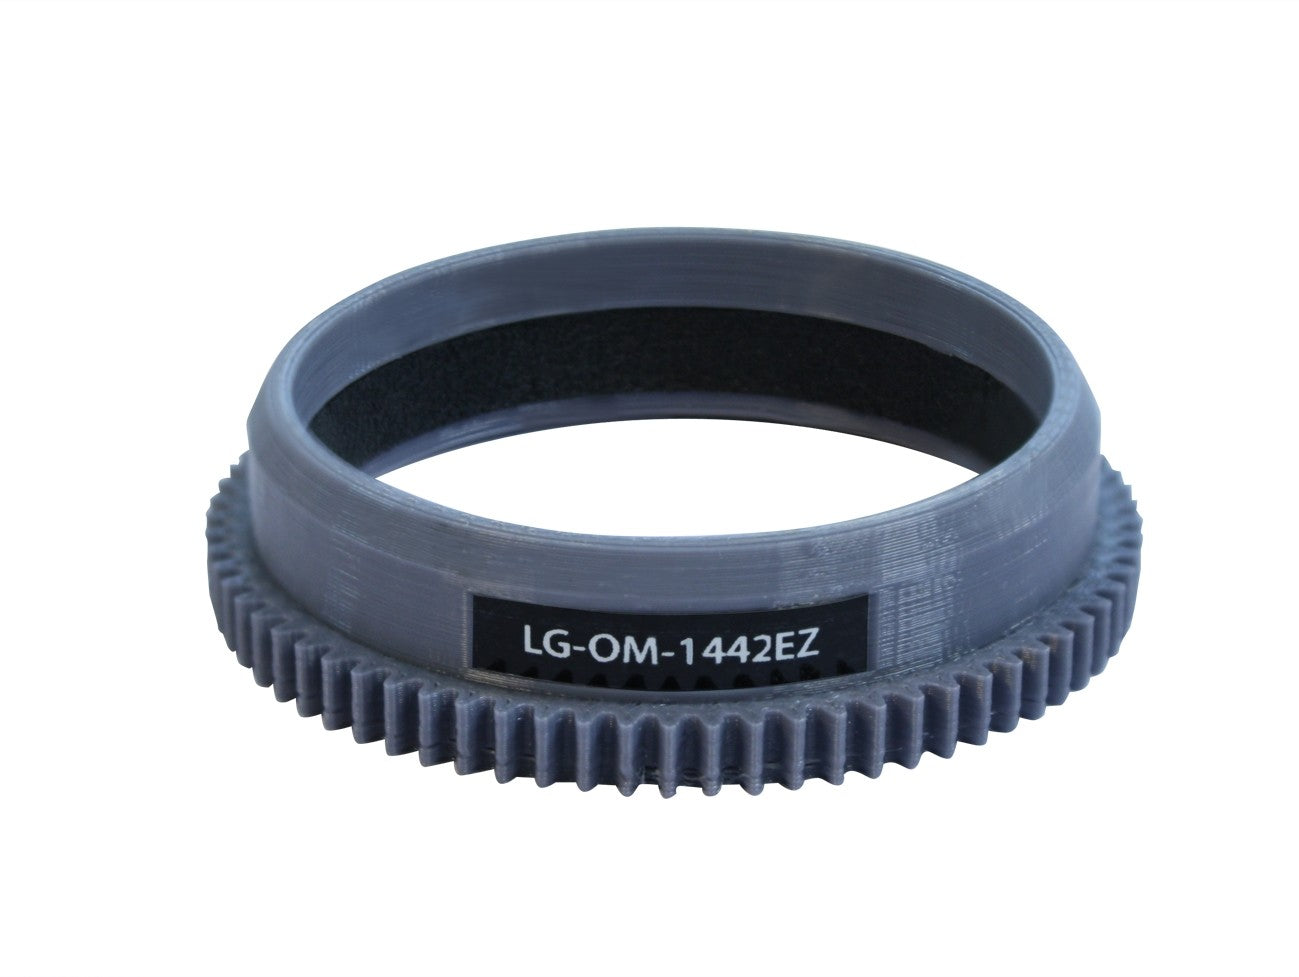 AOI LG-OM-12100PRO / LG-OM-1250EZ / LG-OM-1442EZ Zoom Gear for ZUIKO DIGITAL